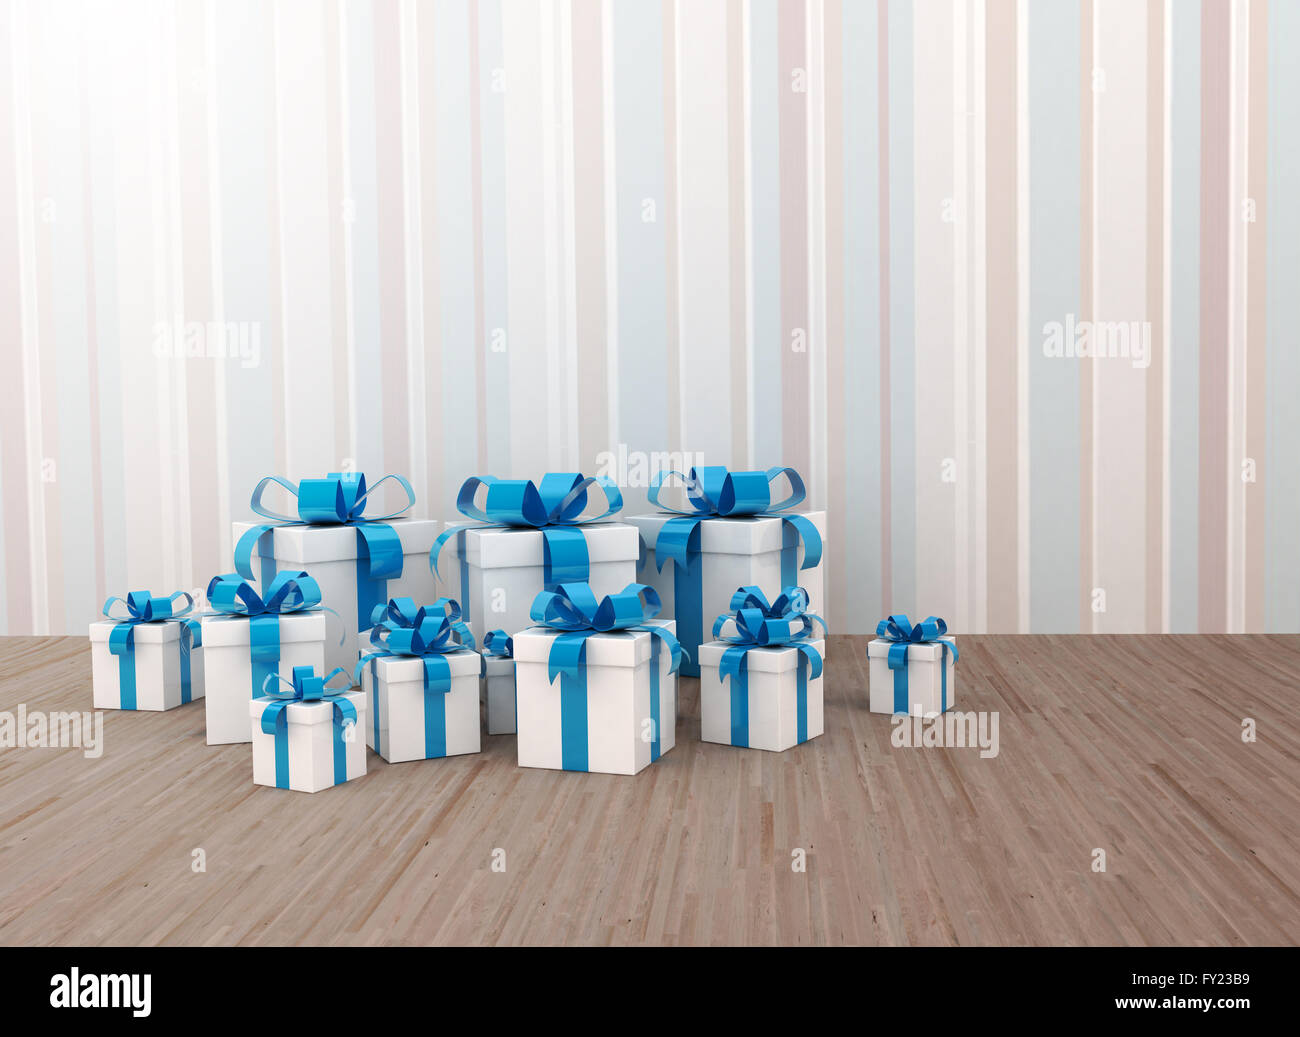 Gruppe von blauen Geschenke für Geburtstag oder Weihnachten Stockfoto